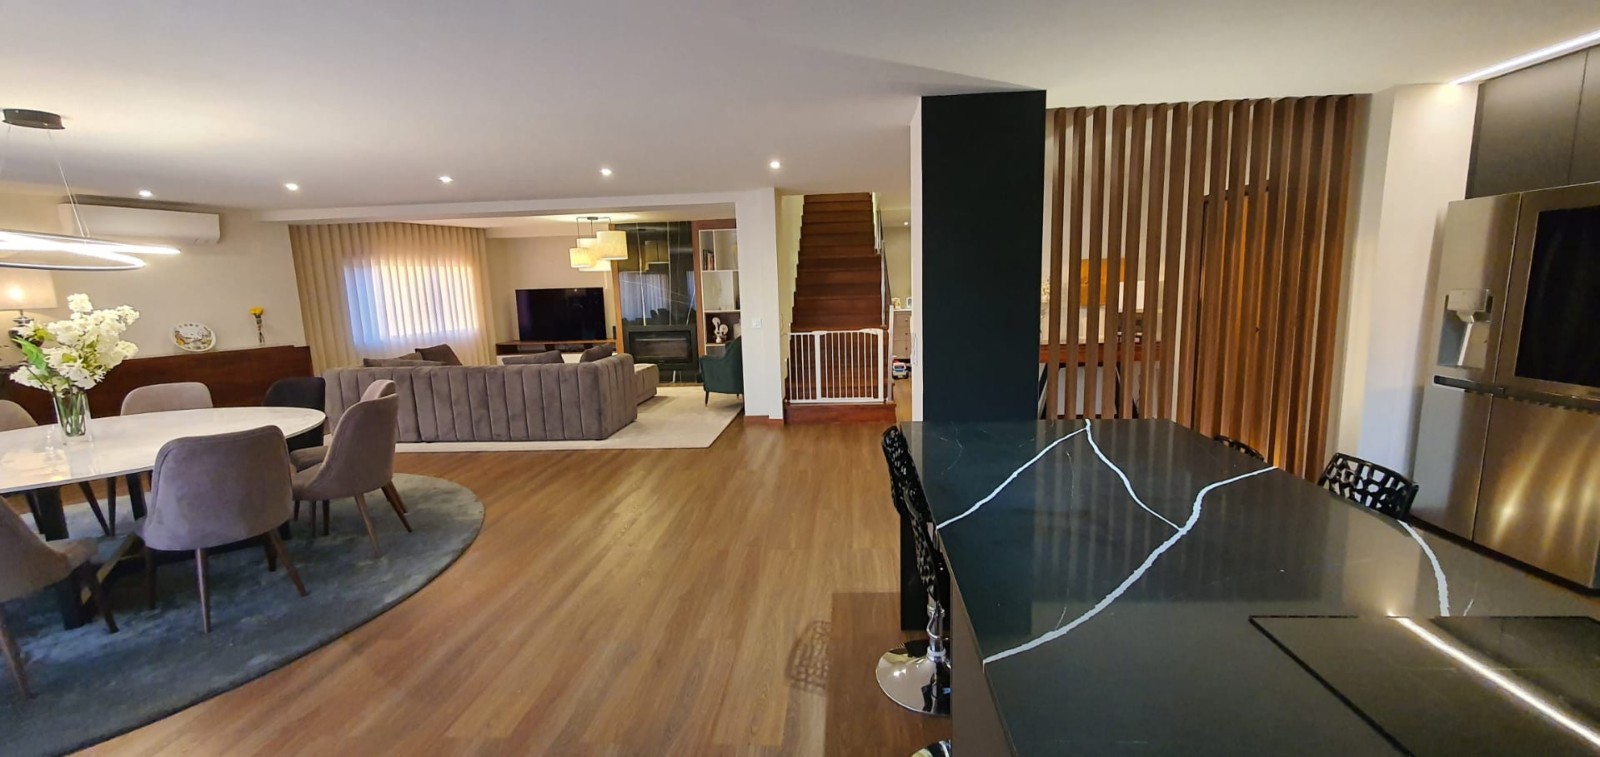 Verkauf: 5-Schlafzimmer-Penthouse mit Terrasse und Pool, in Carvalhos, V. N. Gaia, Portugal_218750